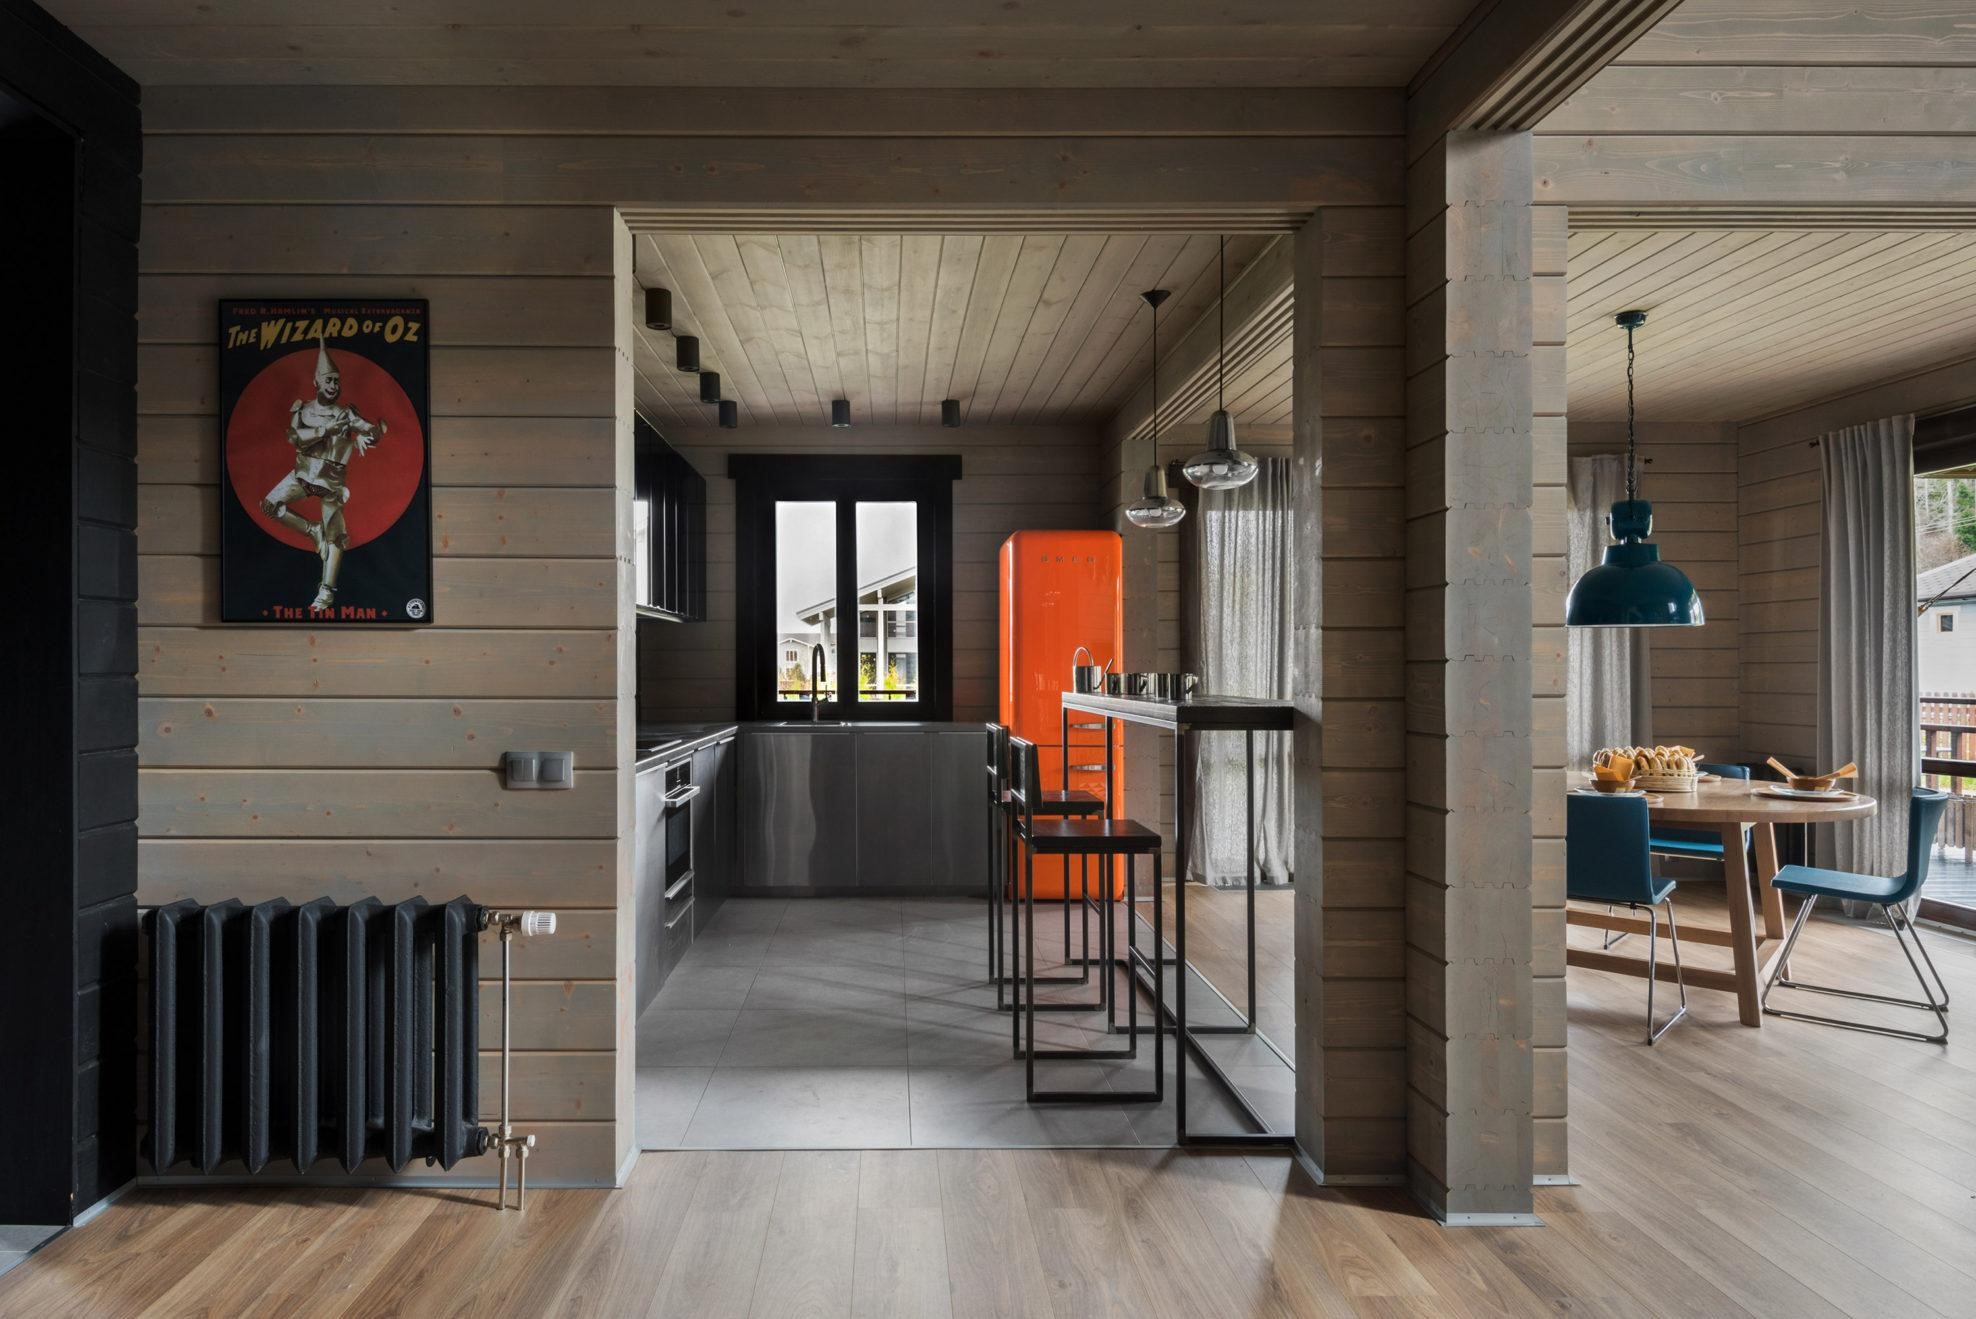 Мебель футуристичных форм, ультрасовременная кухня с фасадами из нержавейки